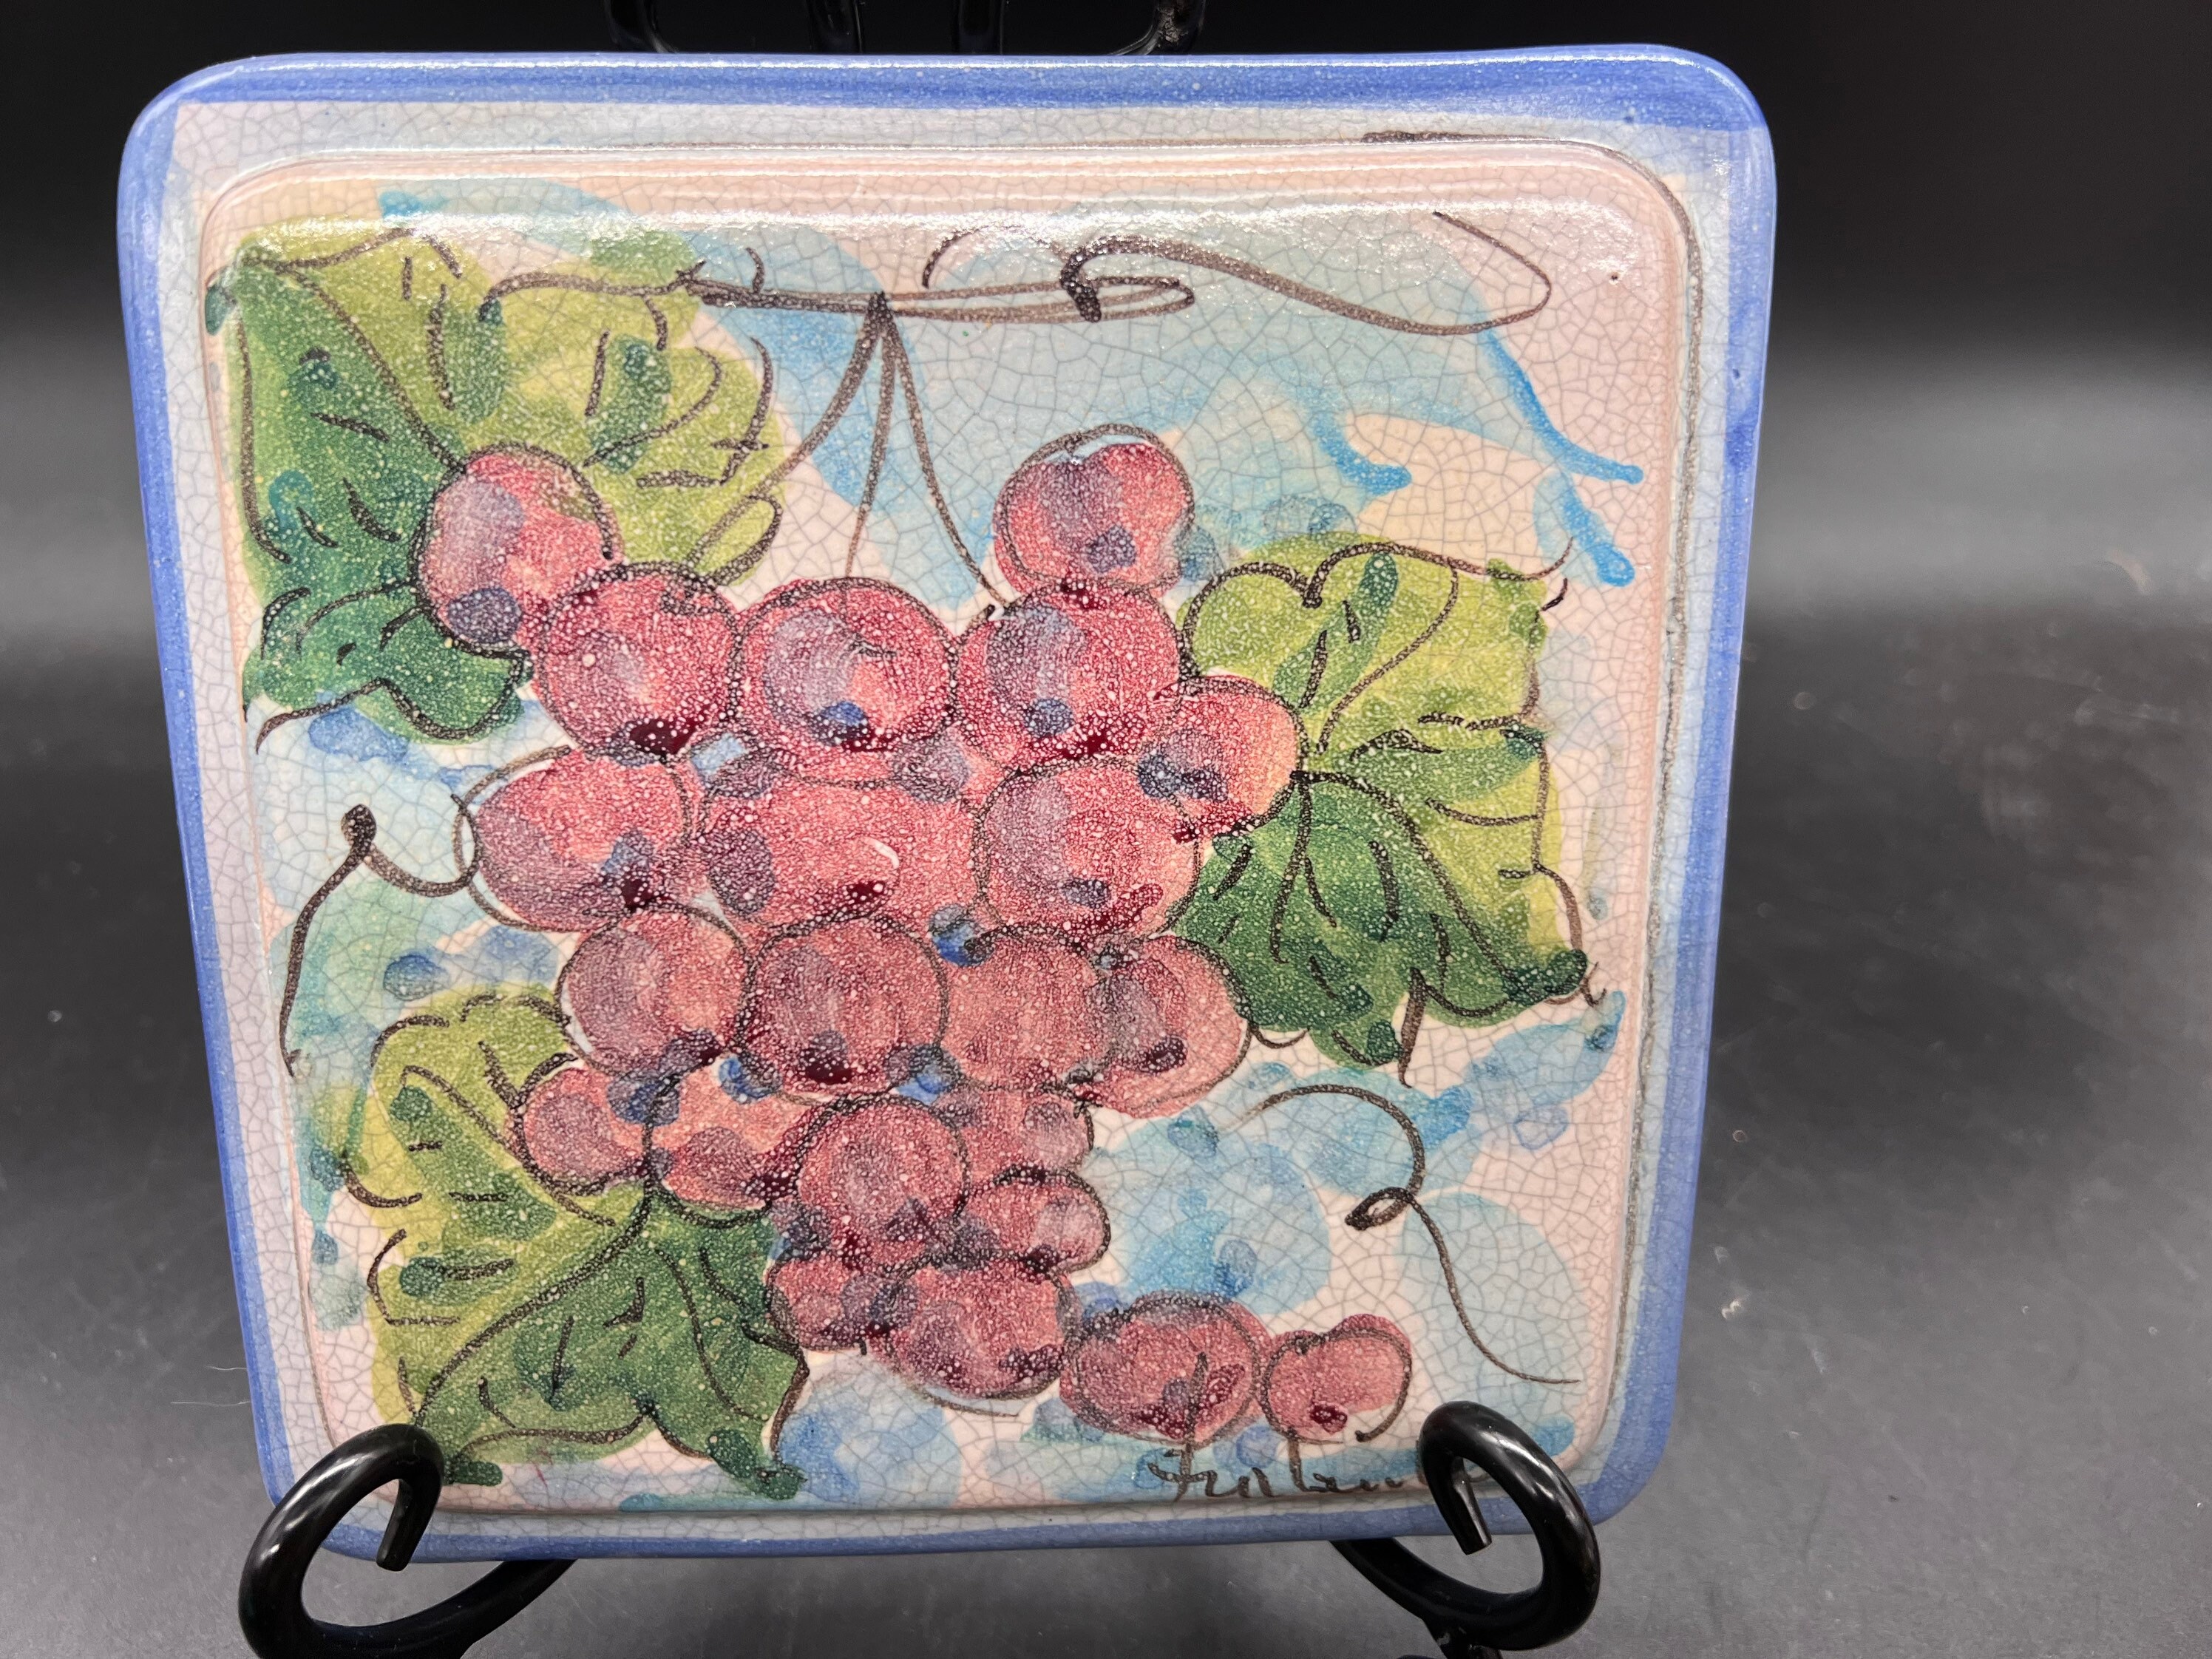 frantantoni ceramiche dessous de plat en terre cuite carrelage d'affichage mural vietri italie peint à la main raisins fruits vintage